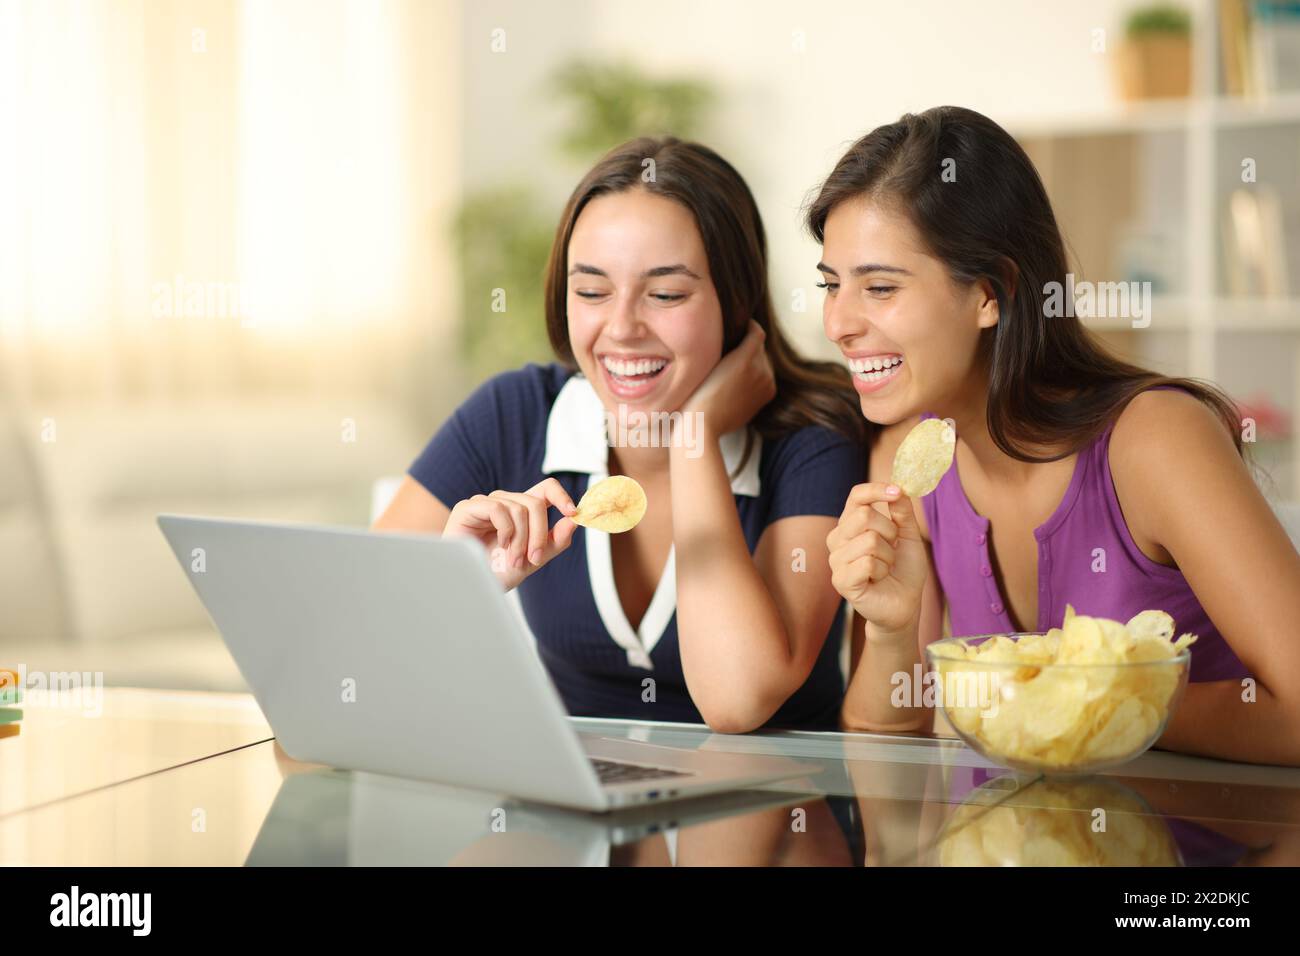 Femmes heureuses mangeant des chips et regardant la vidéo sur ordinateur portable à la maison Banque D'Images